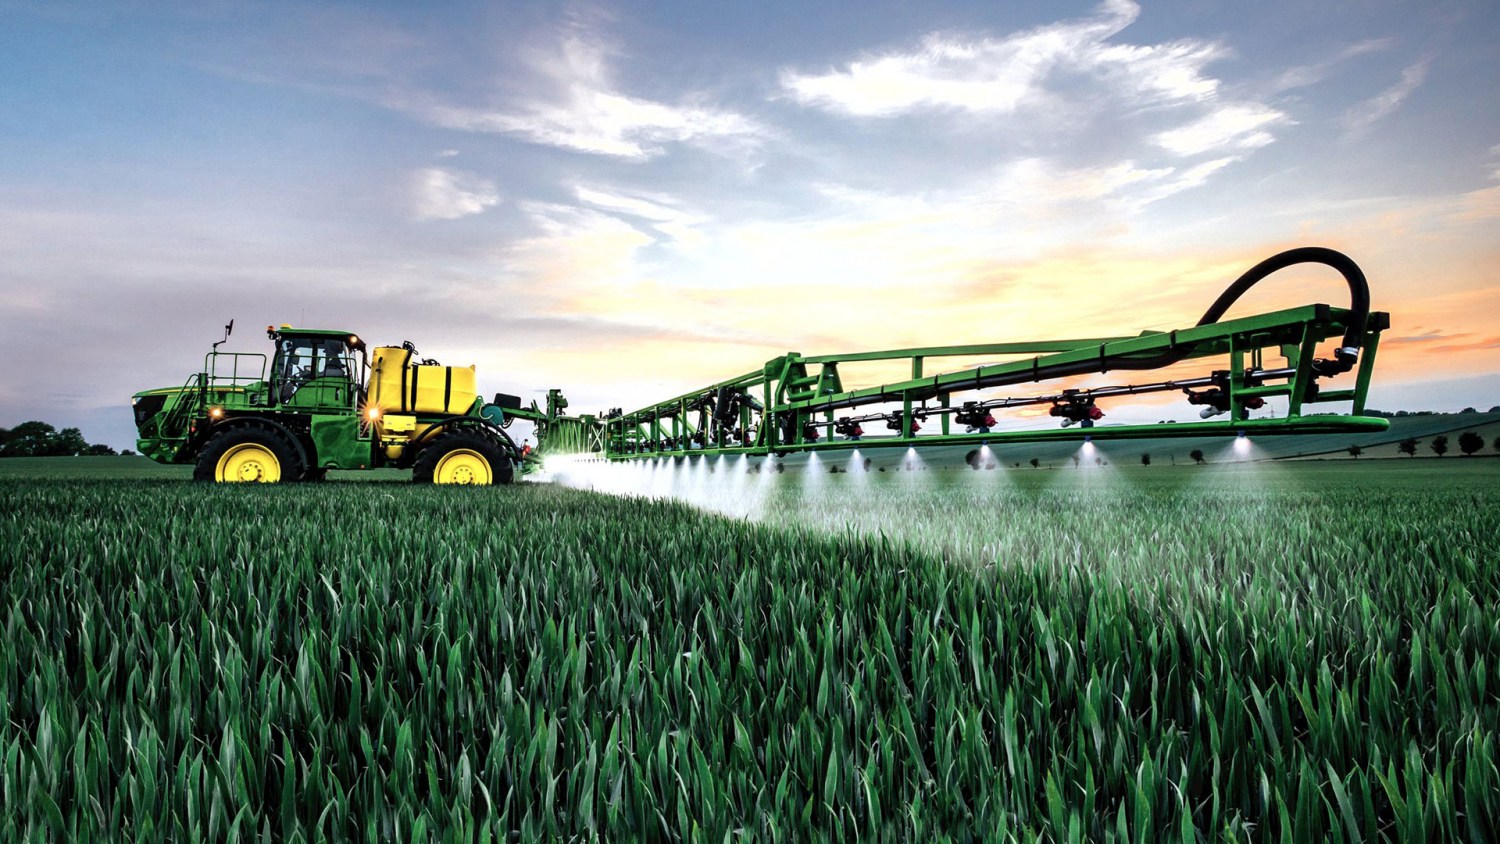 InfoMoney | Cresce a procura por bioinsumos para driblar a alta de preços dos fertilizantes